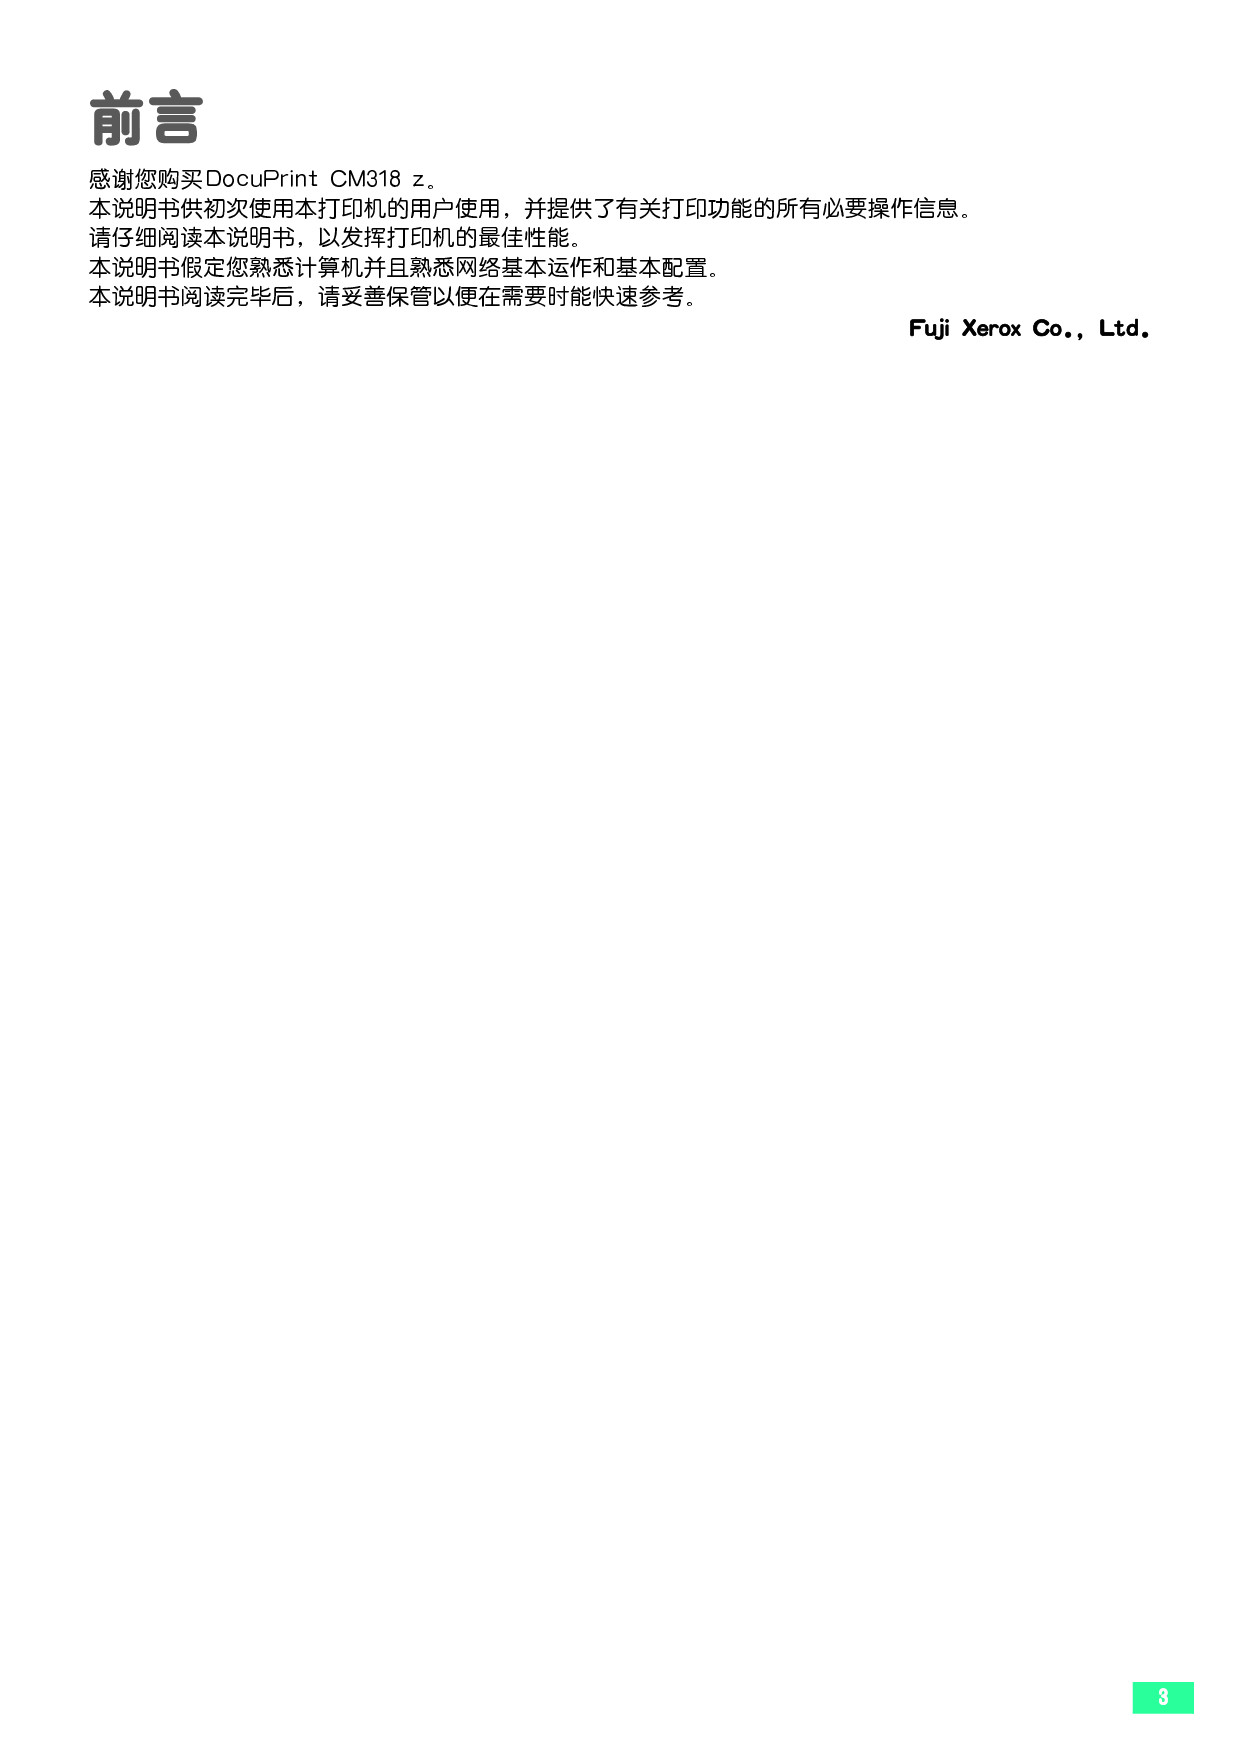 富士施乐 Fuji Xerox DocuPrint CM318 z 使用说明书 第2页